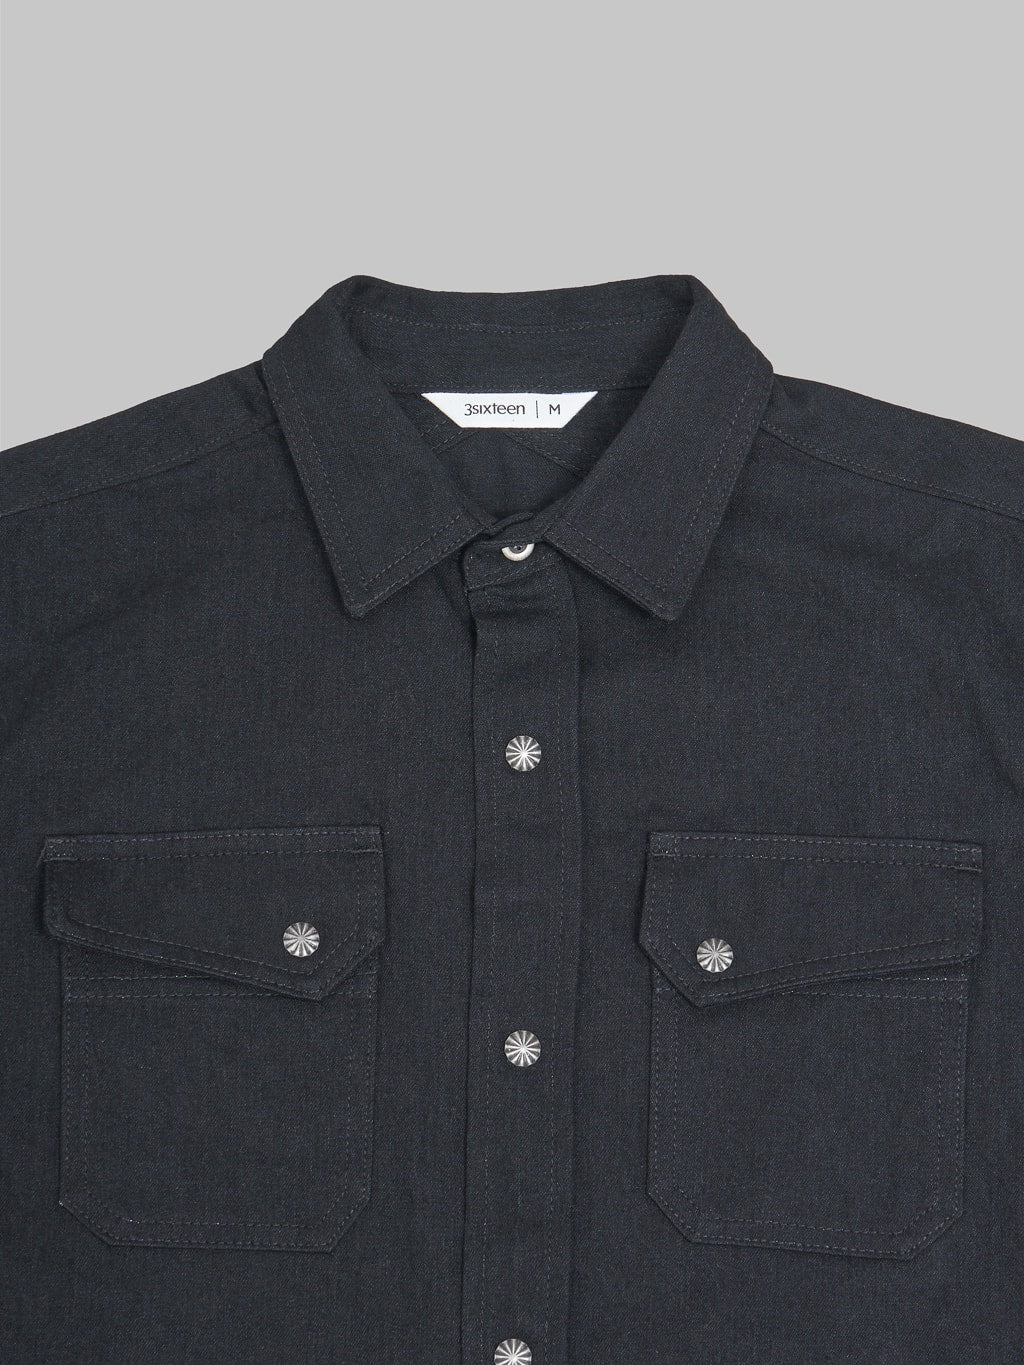 3sixteen Crosscut Western Black Denim Shirt